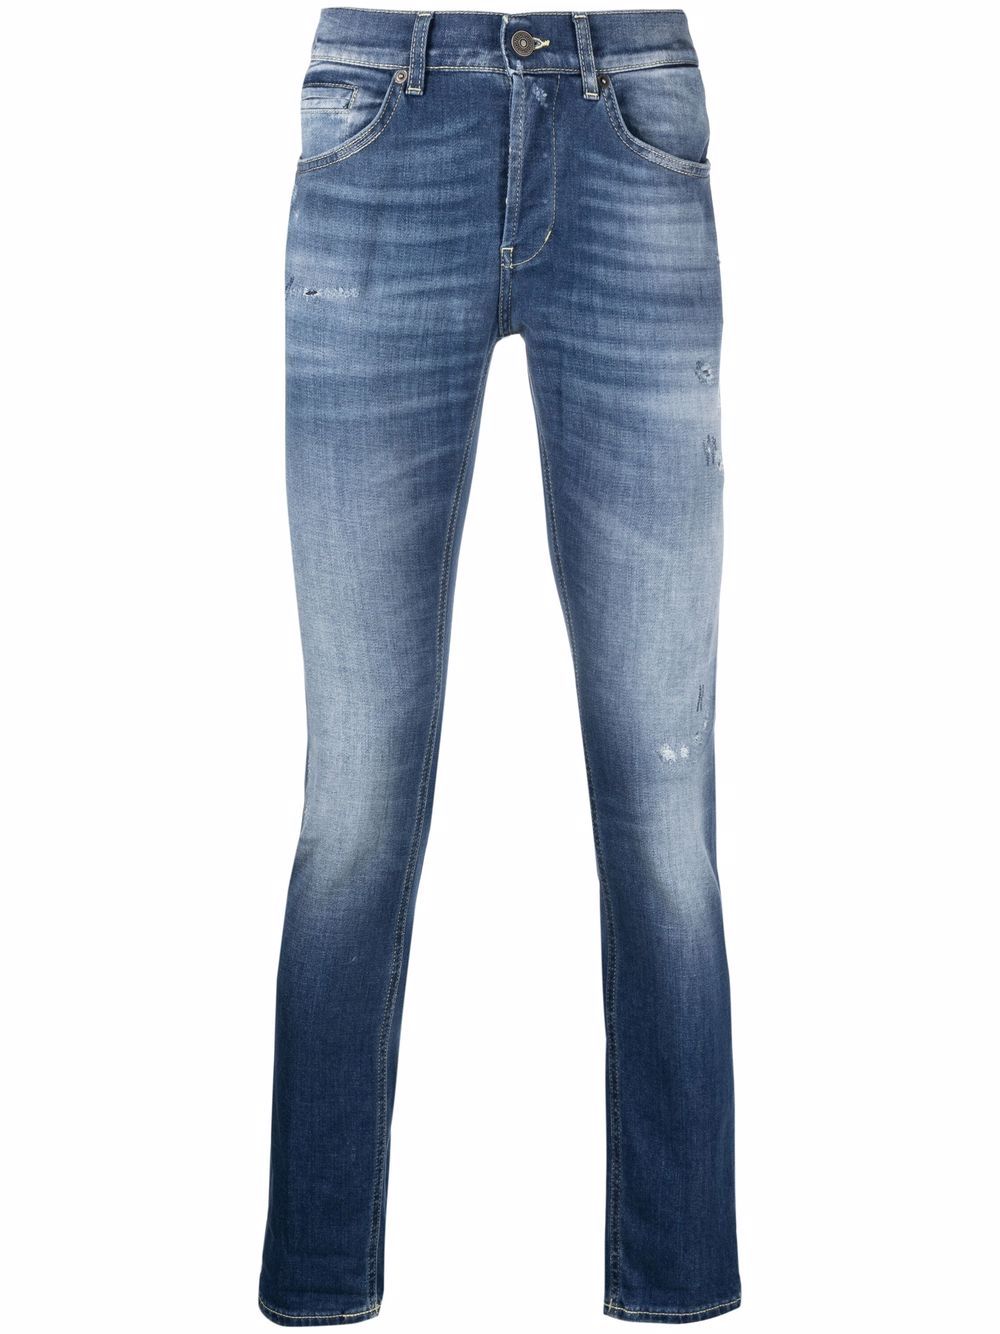 фото Dondup джинсы скинни с заниженной талией